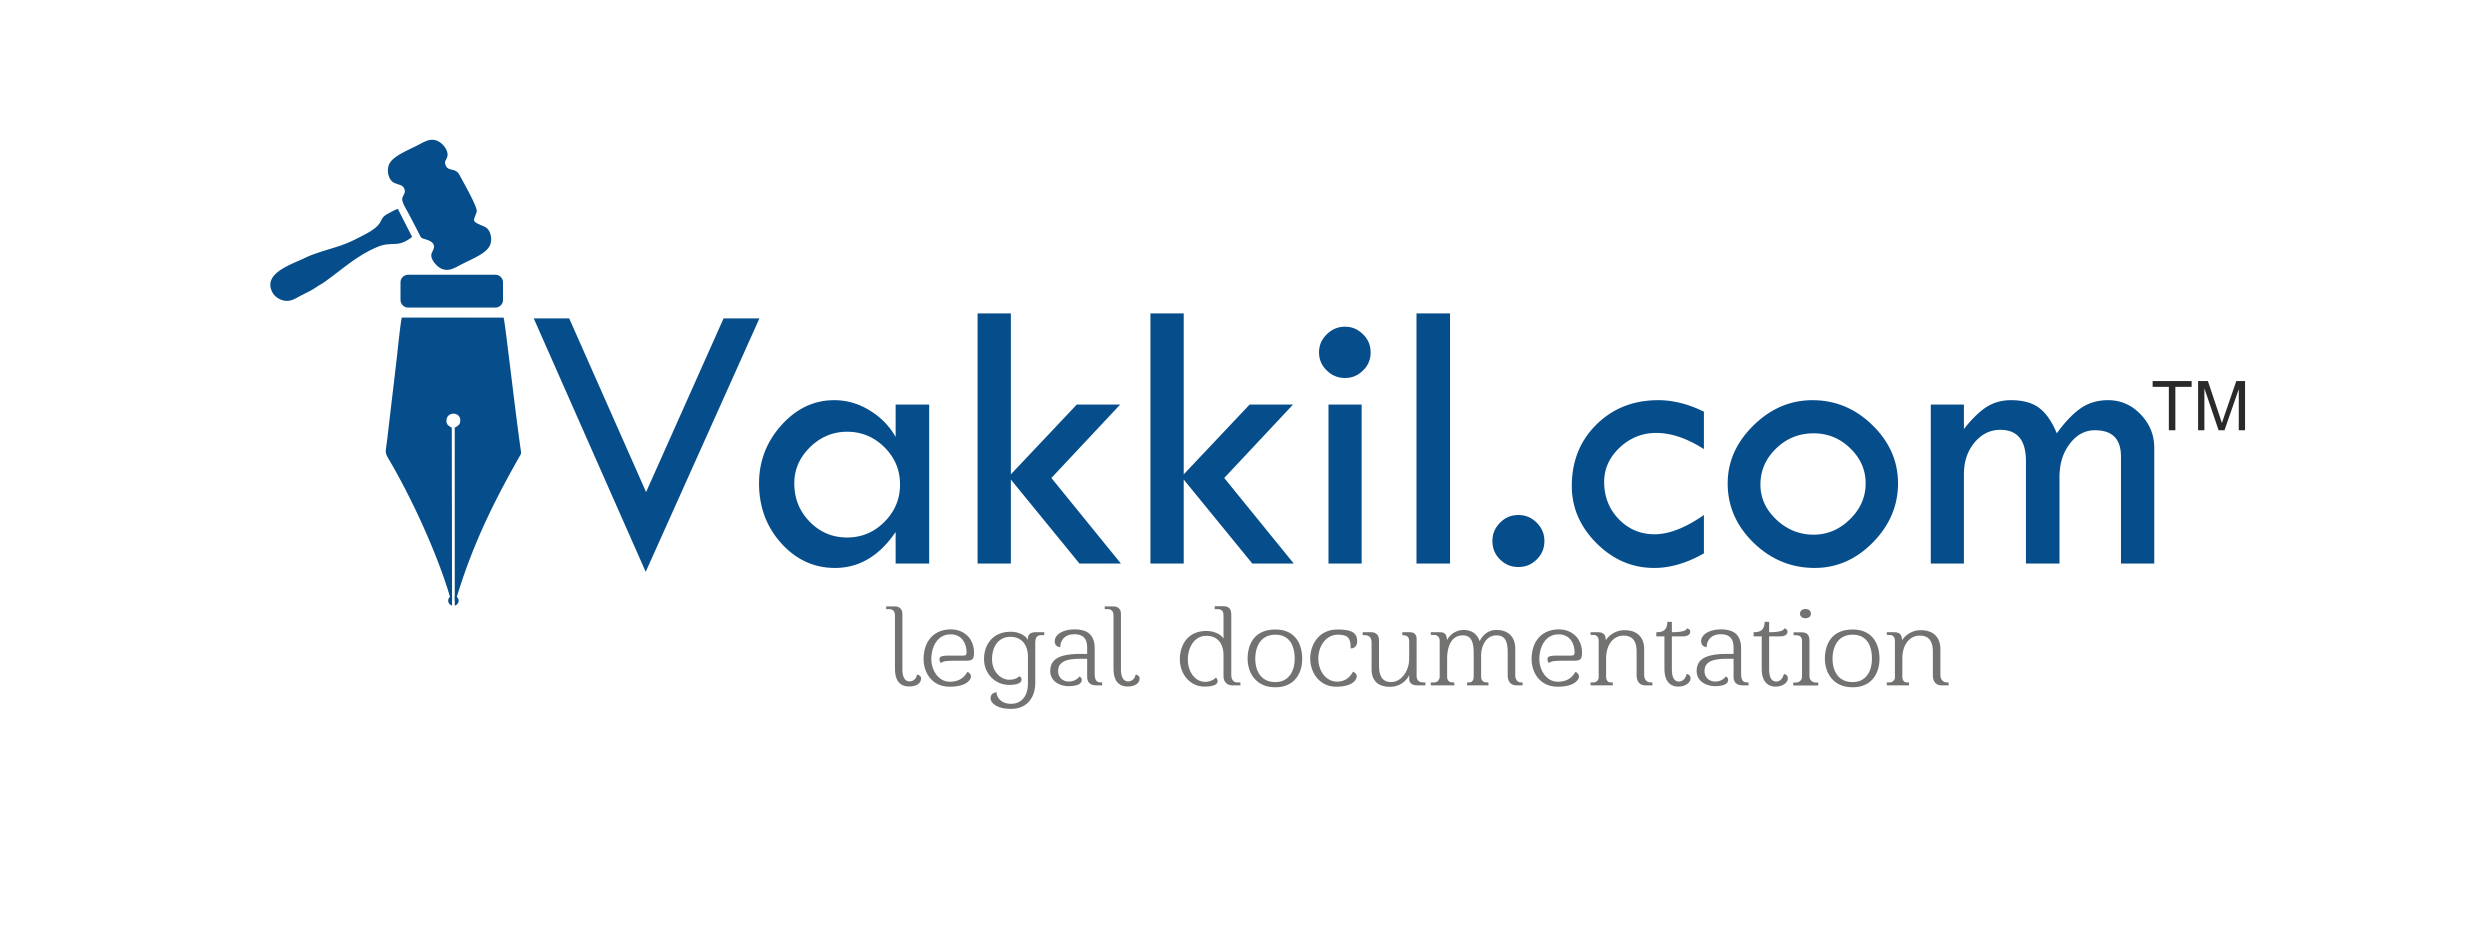 Legal Management Services